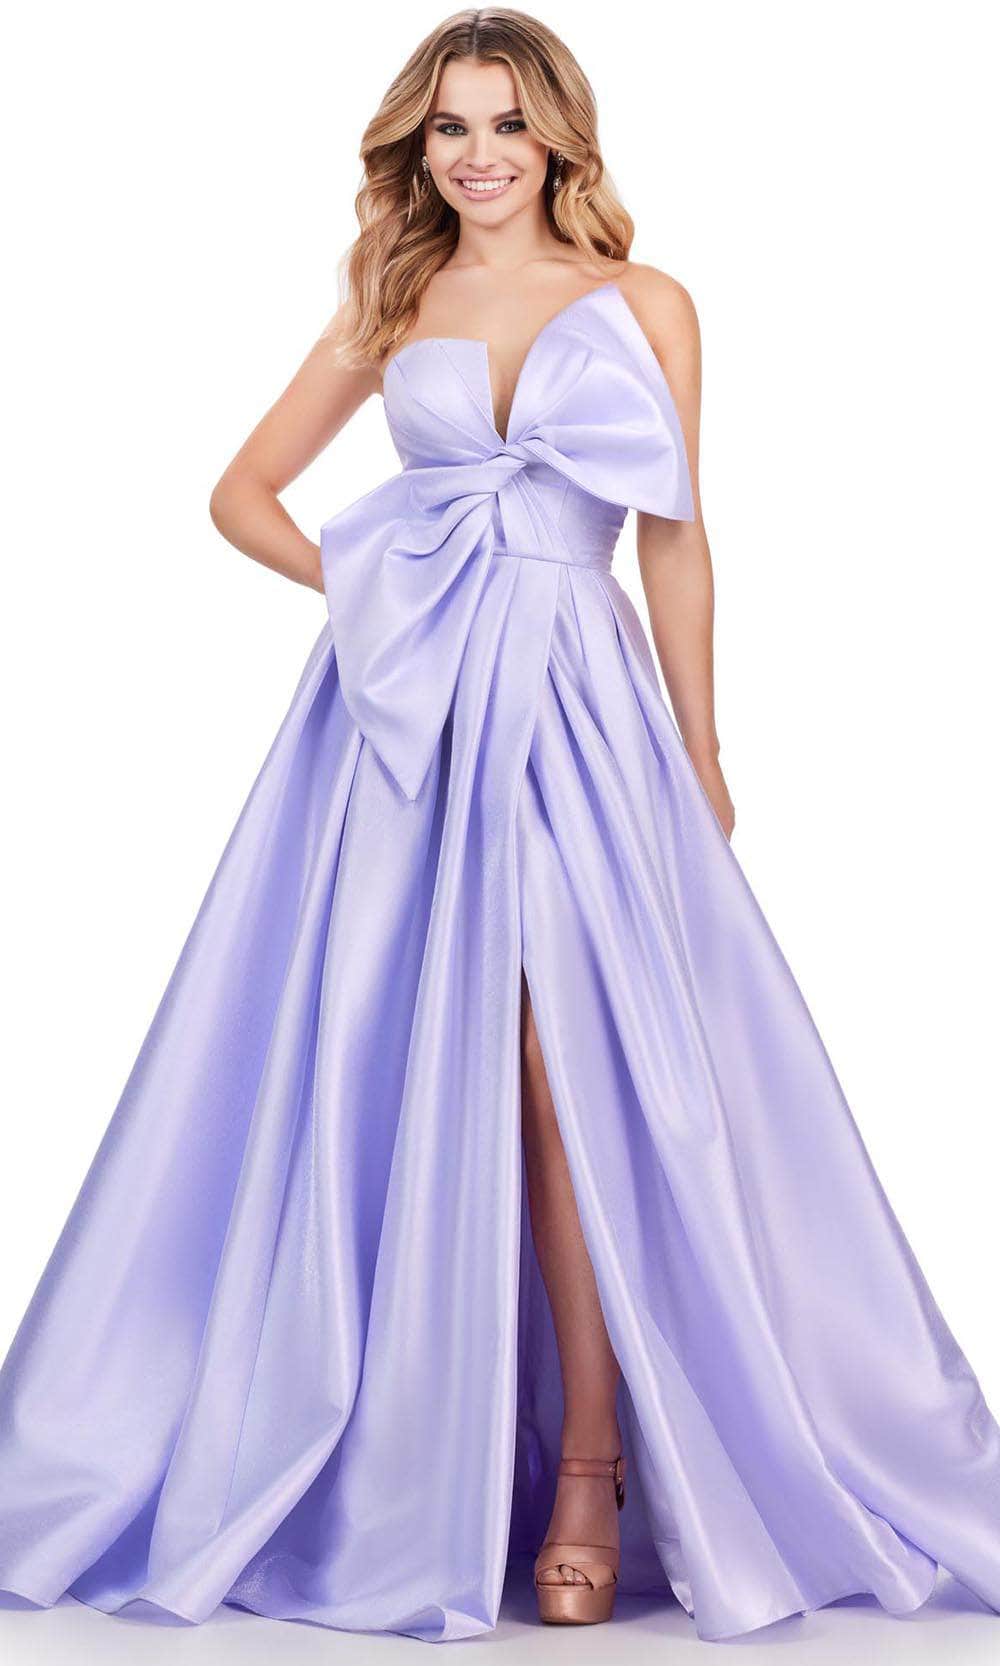 Ashley Lauren 11609 - V-Neck Oversized Bow Prom Ballgown
